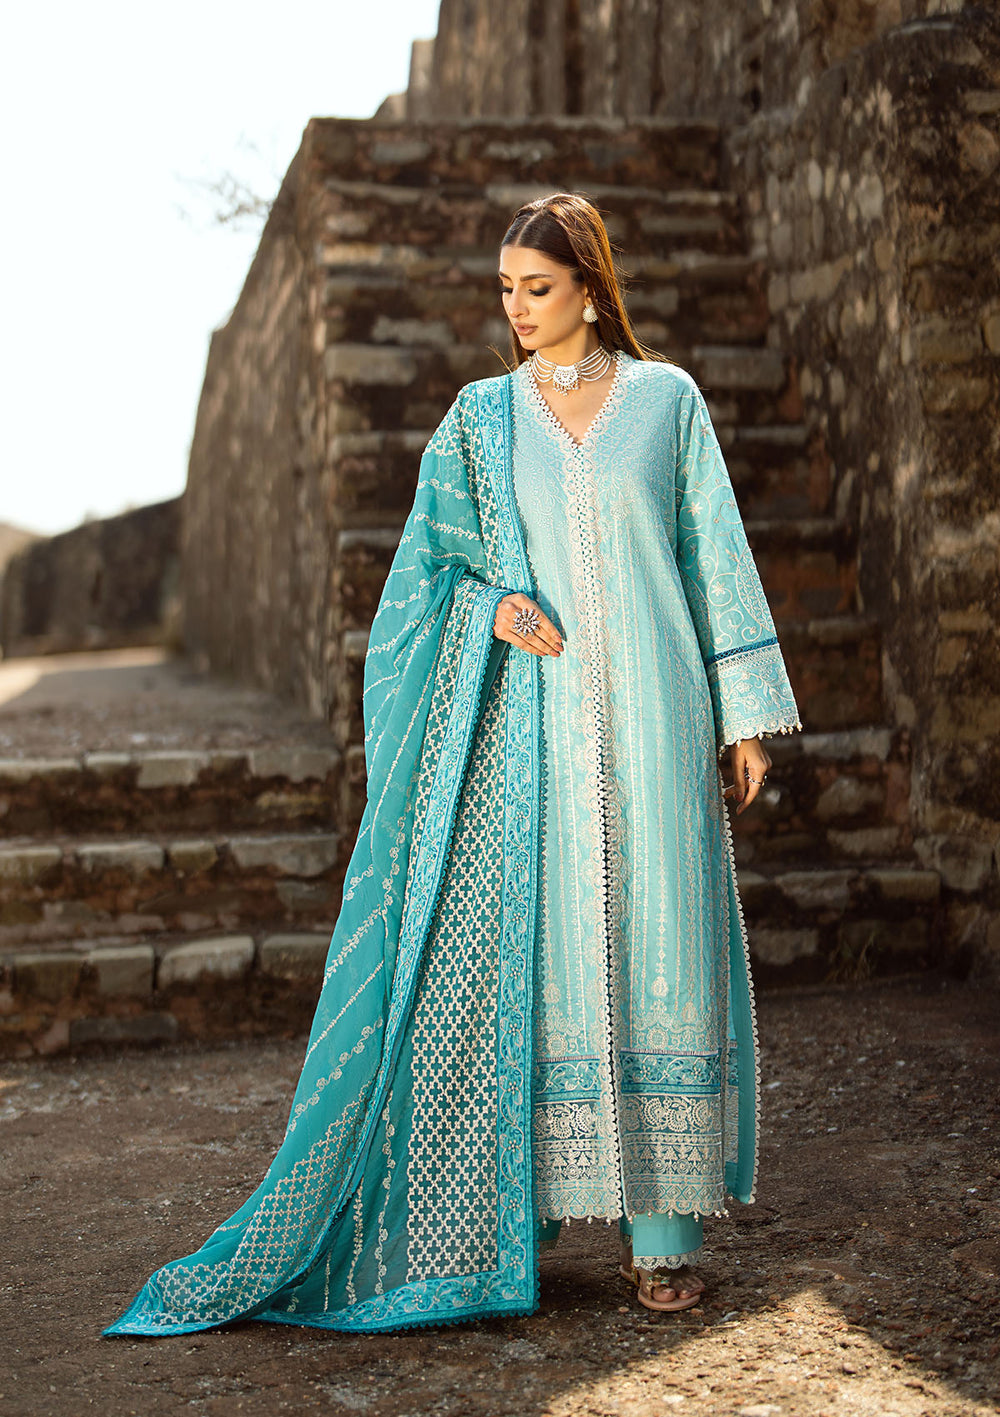 Aik Atelier | Pardes Lawn 24 | LOOK 03 - Khanumjan  Pakistani Clothes and Designer Dresses in UK, USA 